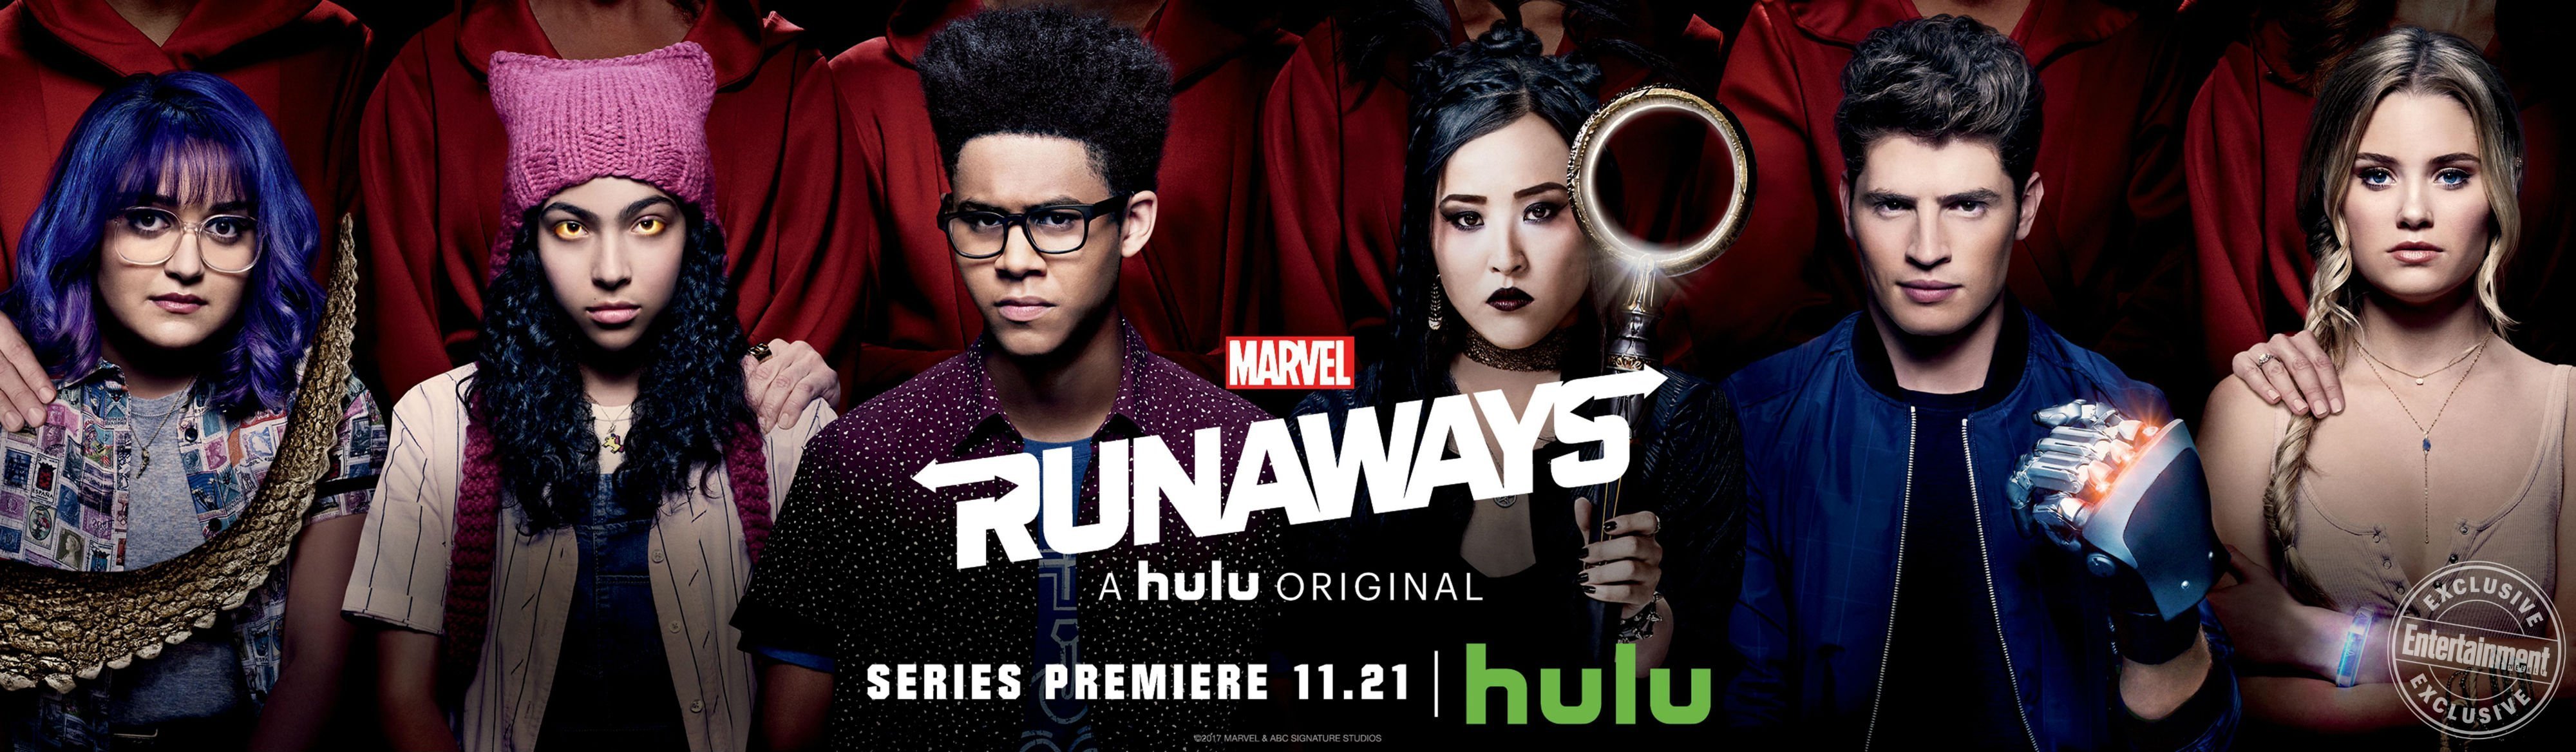 Bannière de la série Marvel Runaways pour Hulu